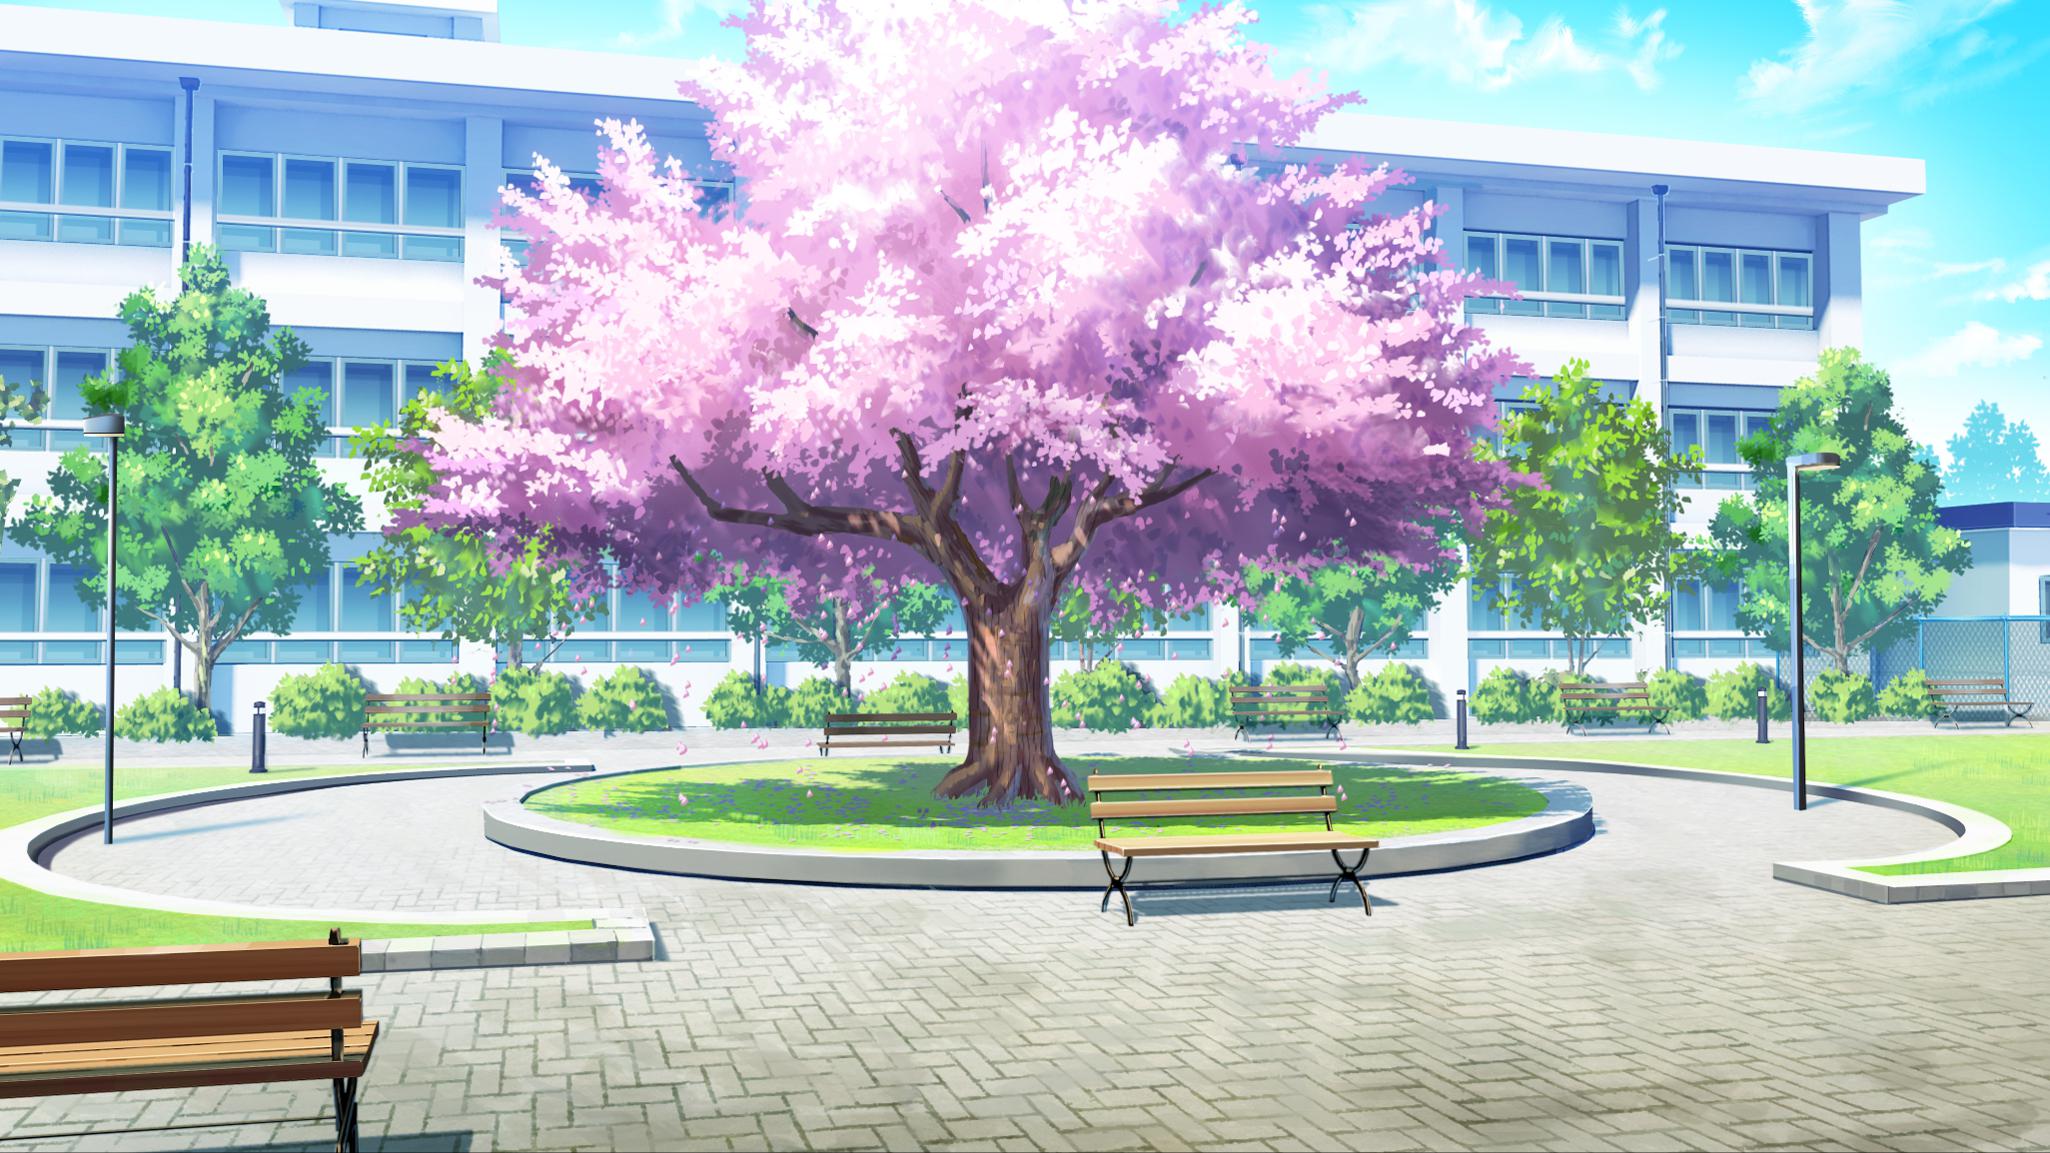 Hãy cùng đặt chân đến ngôi trường đầy hoa anh đào tuyệt đẹp trong Anime và tận hưởng những khoảnh khắc thanh bình và yên tĩnh. Cherry blossom anime school background sẽ khiến bạn như bước vào một câu chuyện cổ tích đầy thần thoại và kỳ lạ.